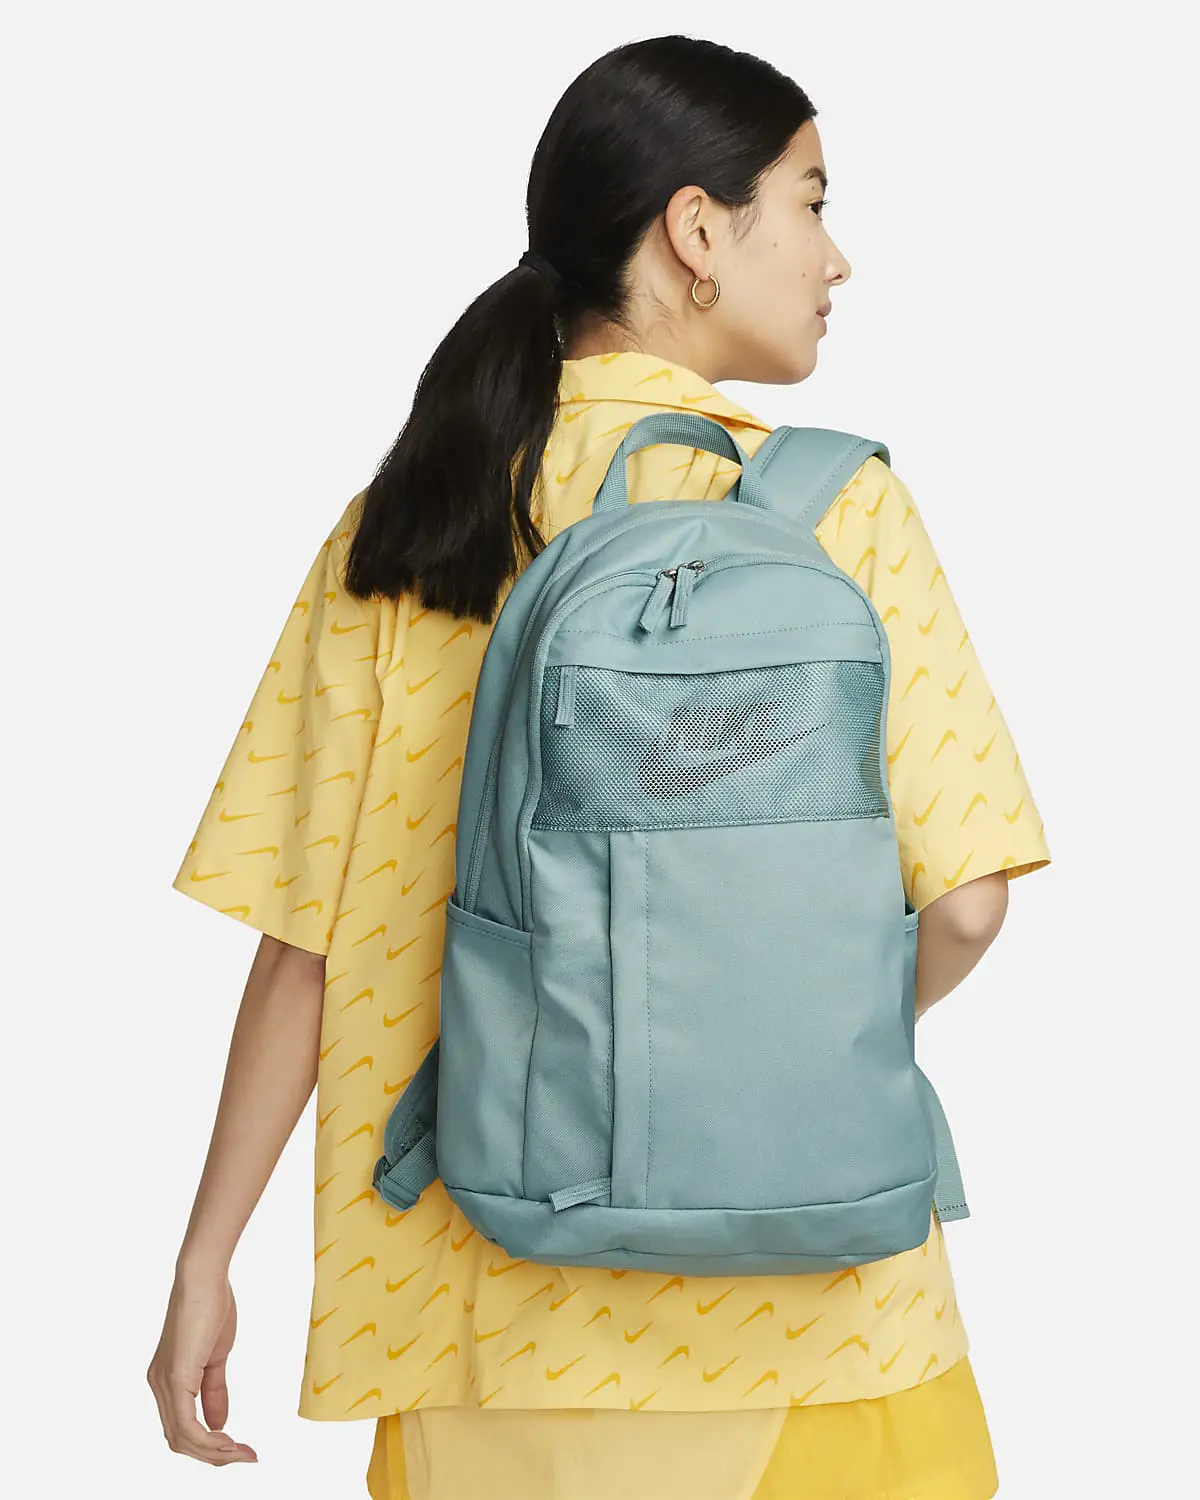 Nike Backpack. 1